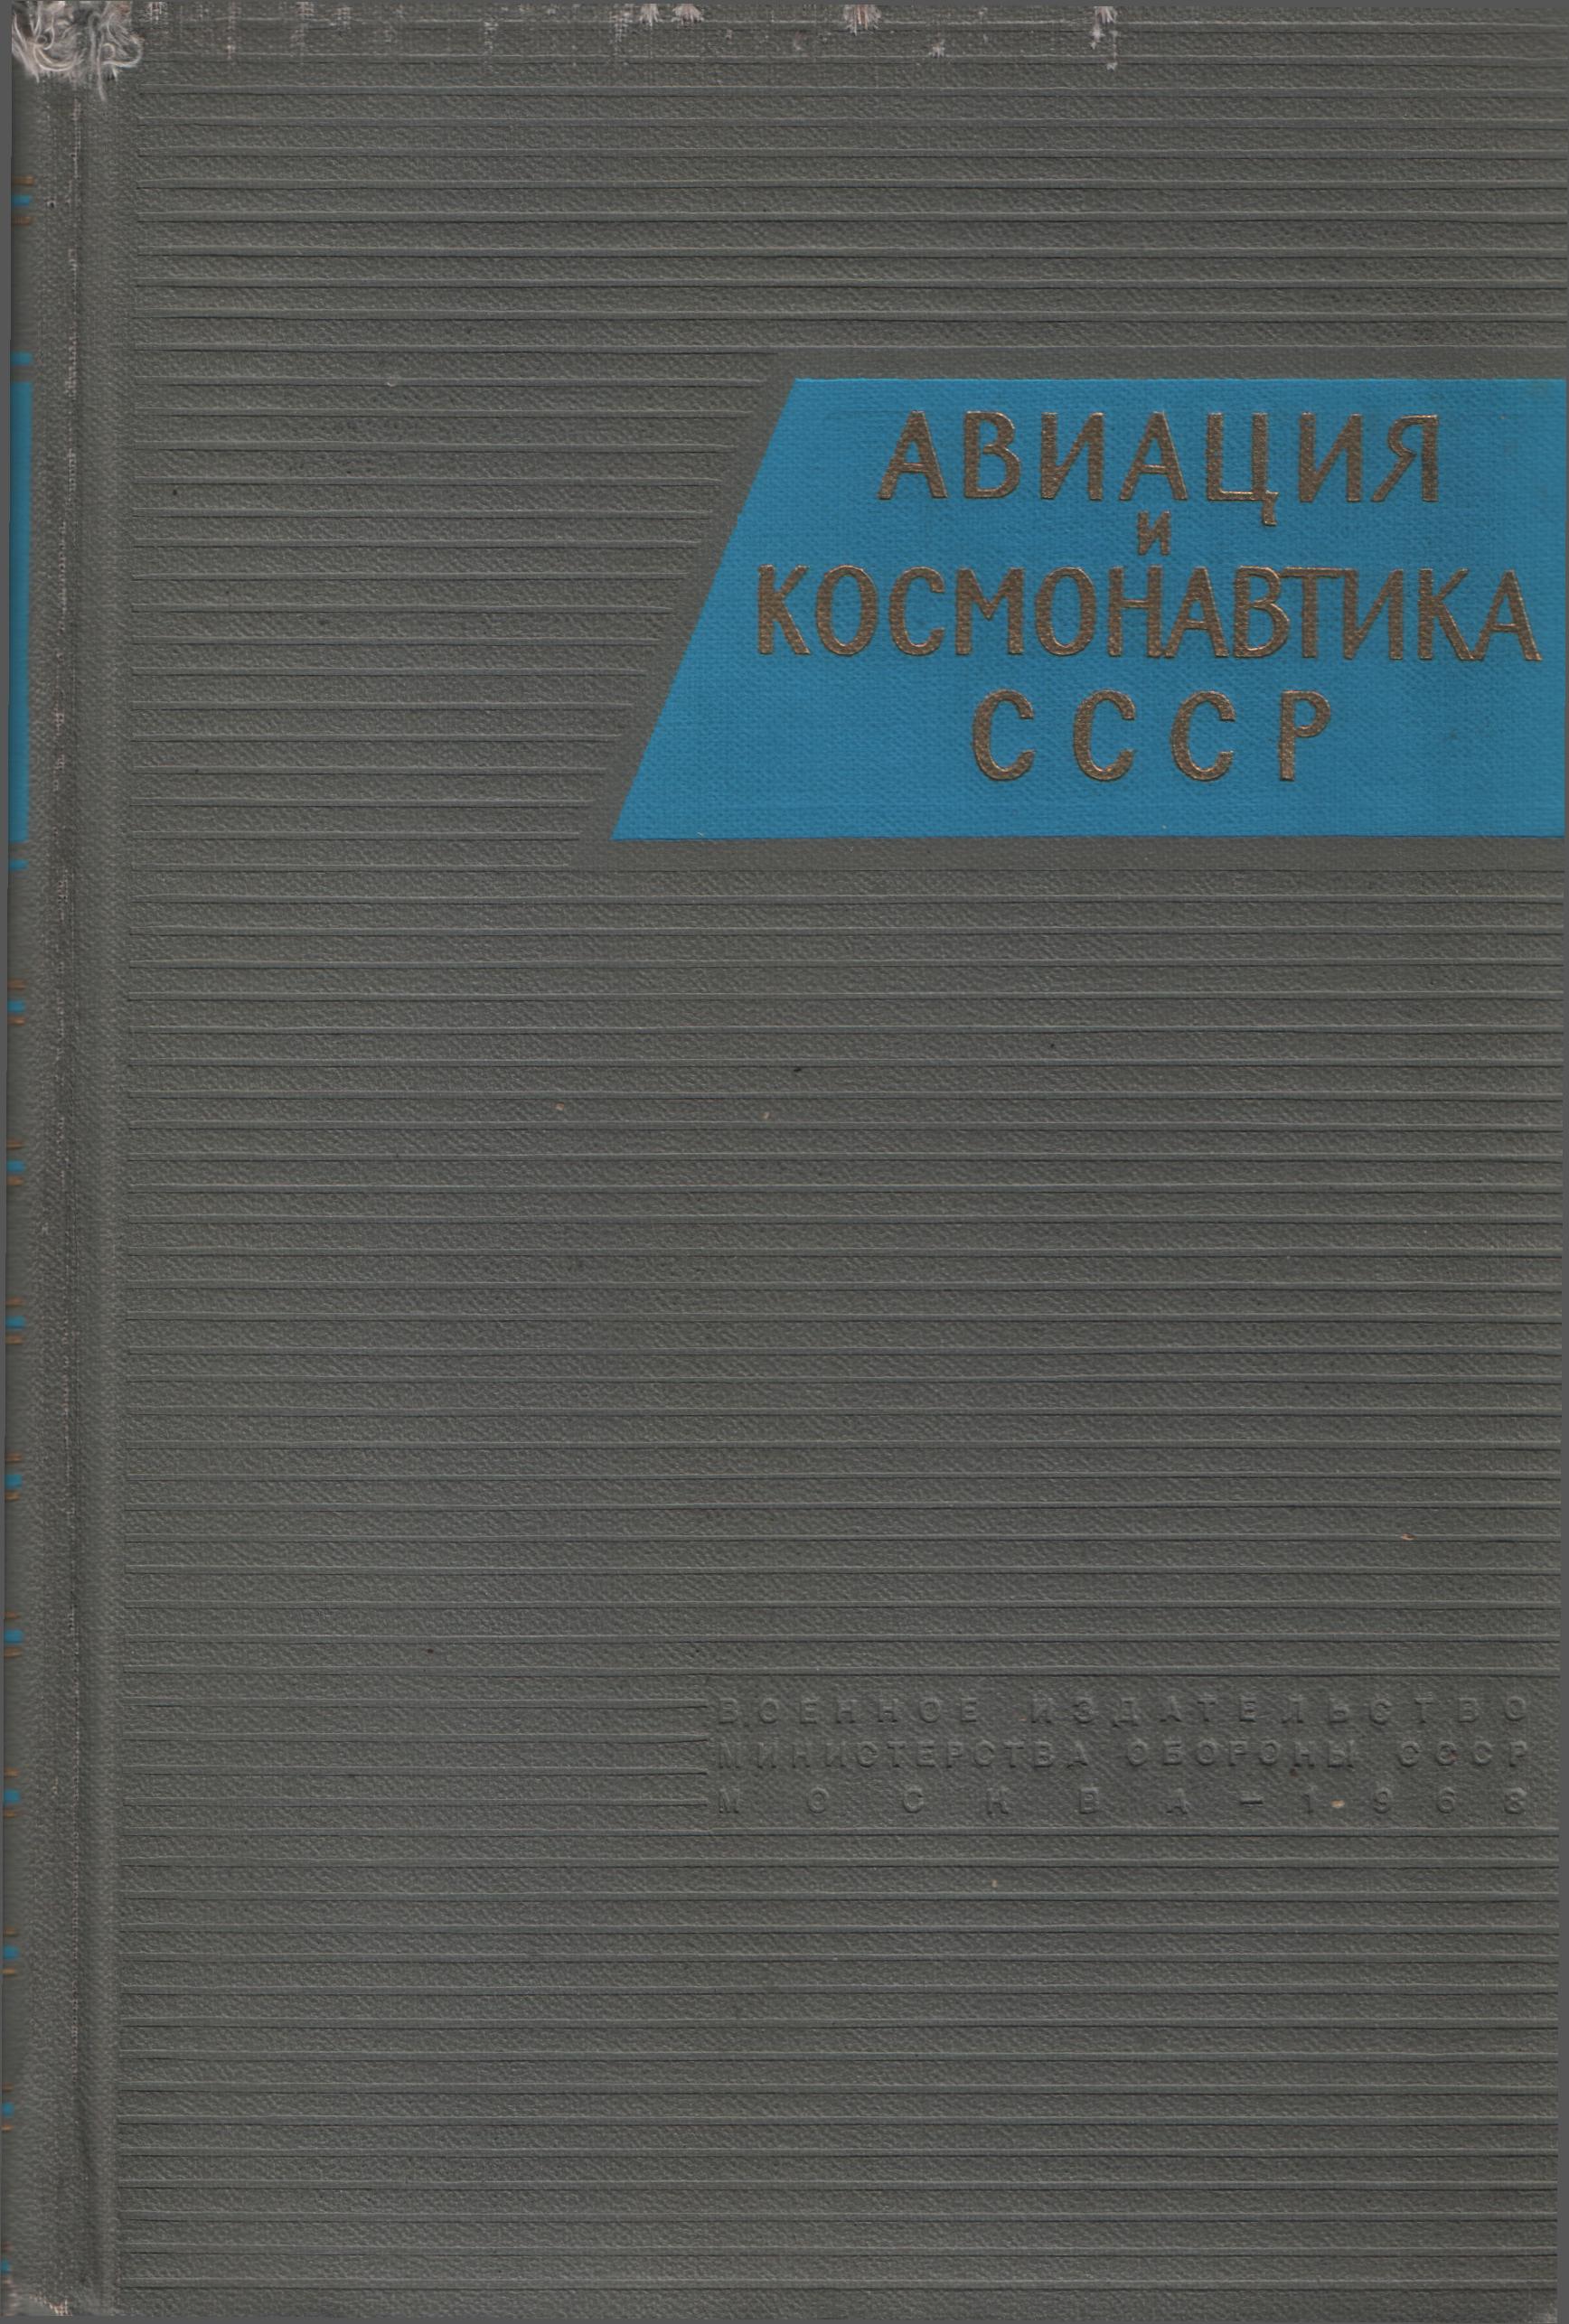 Авиация и космонавтика СССР